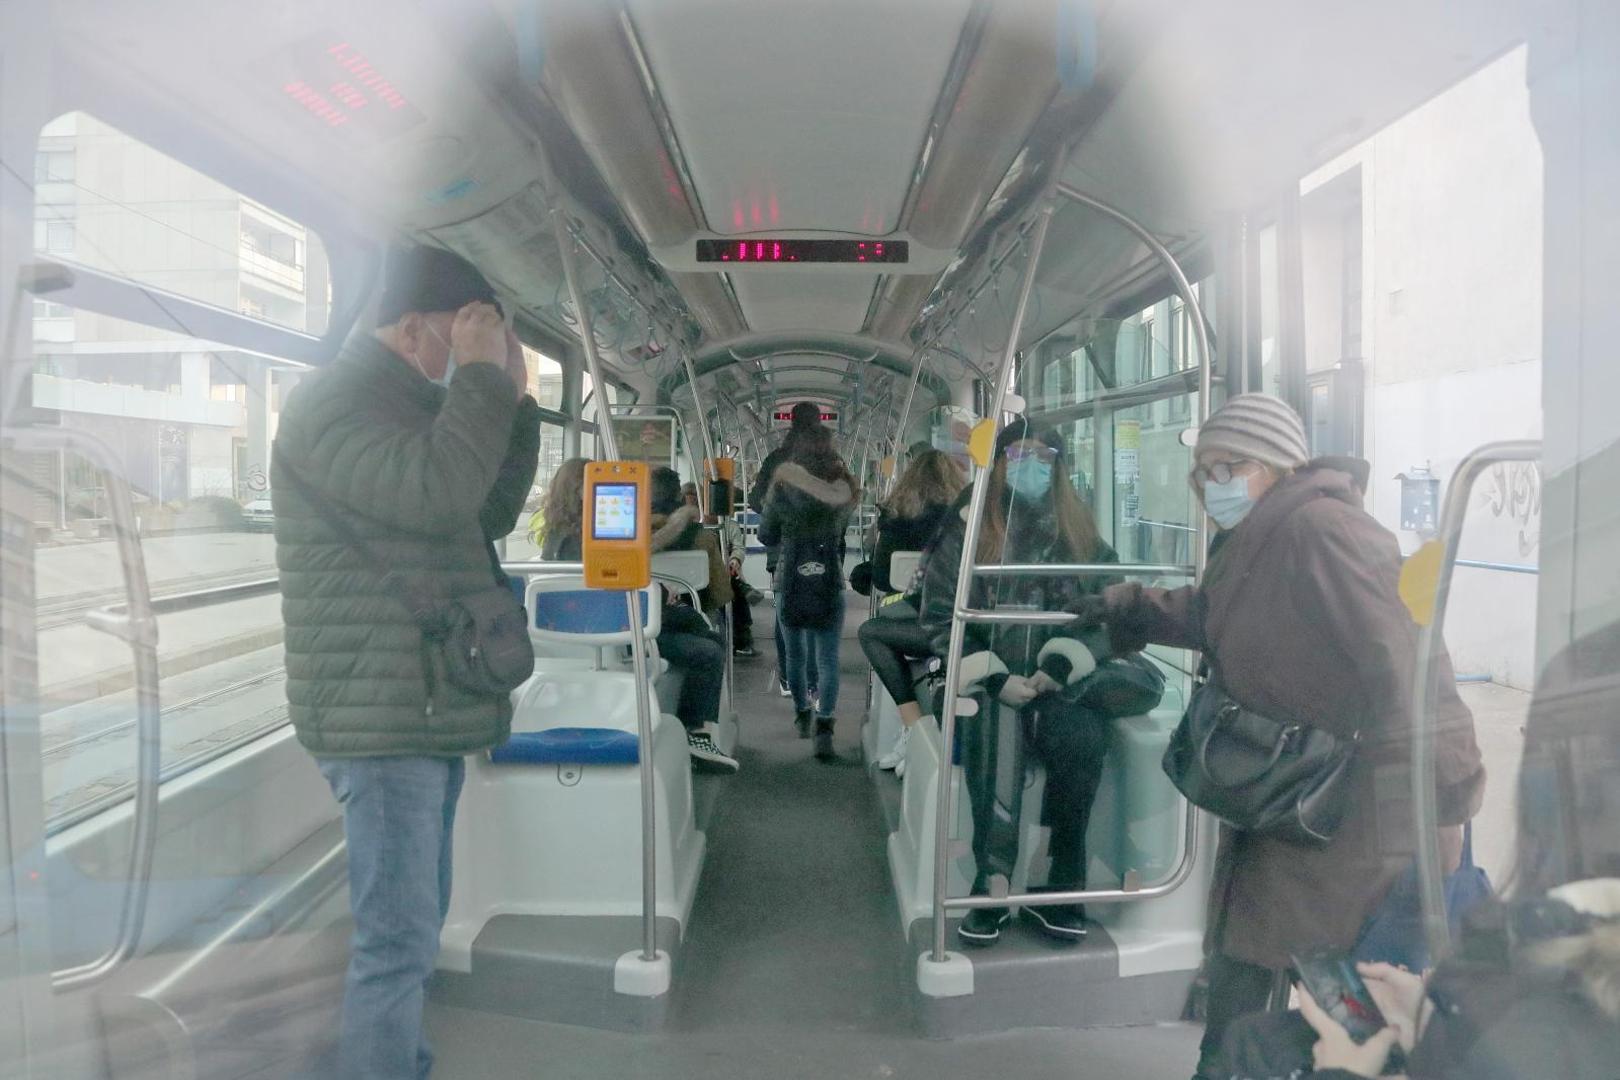 30.11.2020., Zagreb - Okretiste tramvaja Ljubljanica. Kako se provode nove mjere u ZET-ovim vozilima te kako se rijesavaju zahtjevi da popunjenost da ne smije prelaziti 40 posto, osobito u vrijeme jutarnje guzve. Photo: Sanjin Strukic/PIXSELL